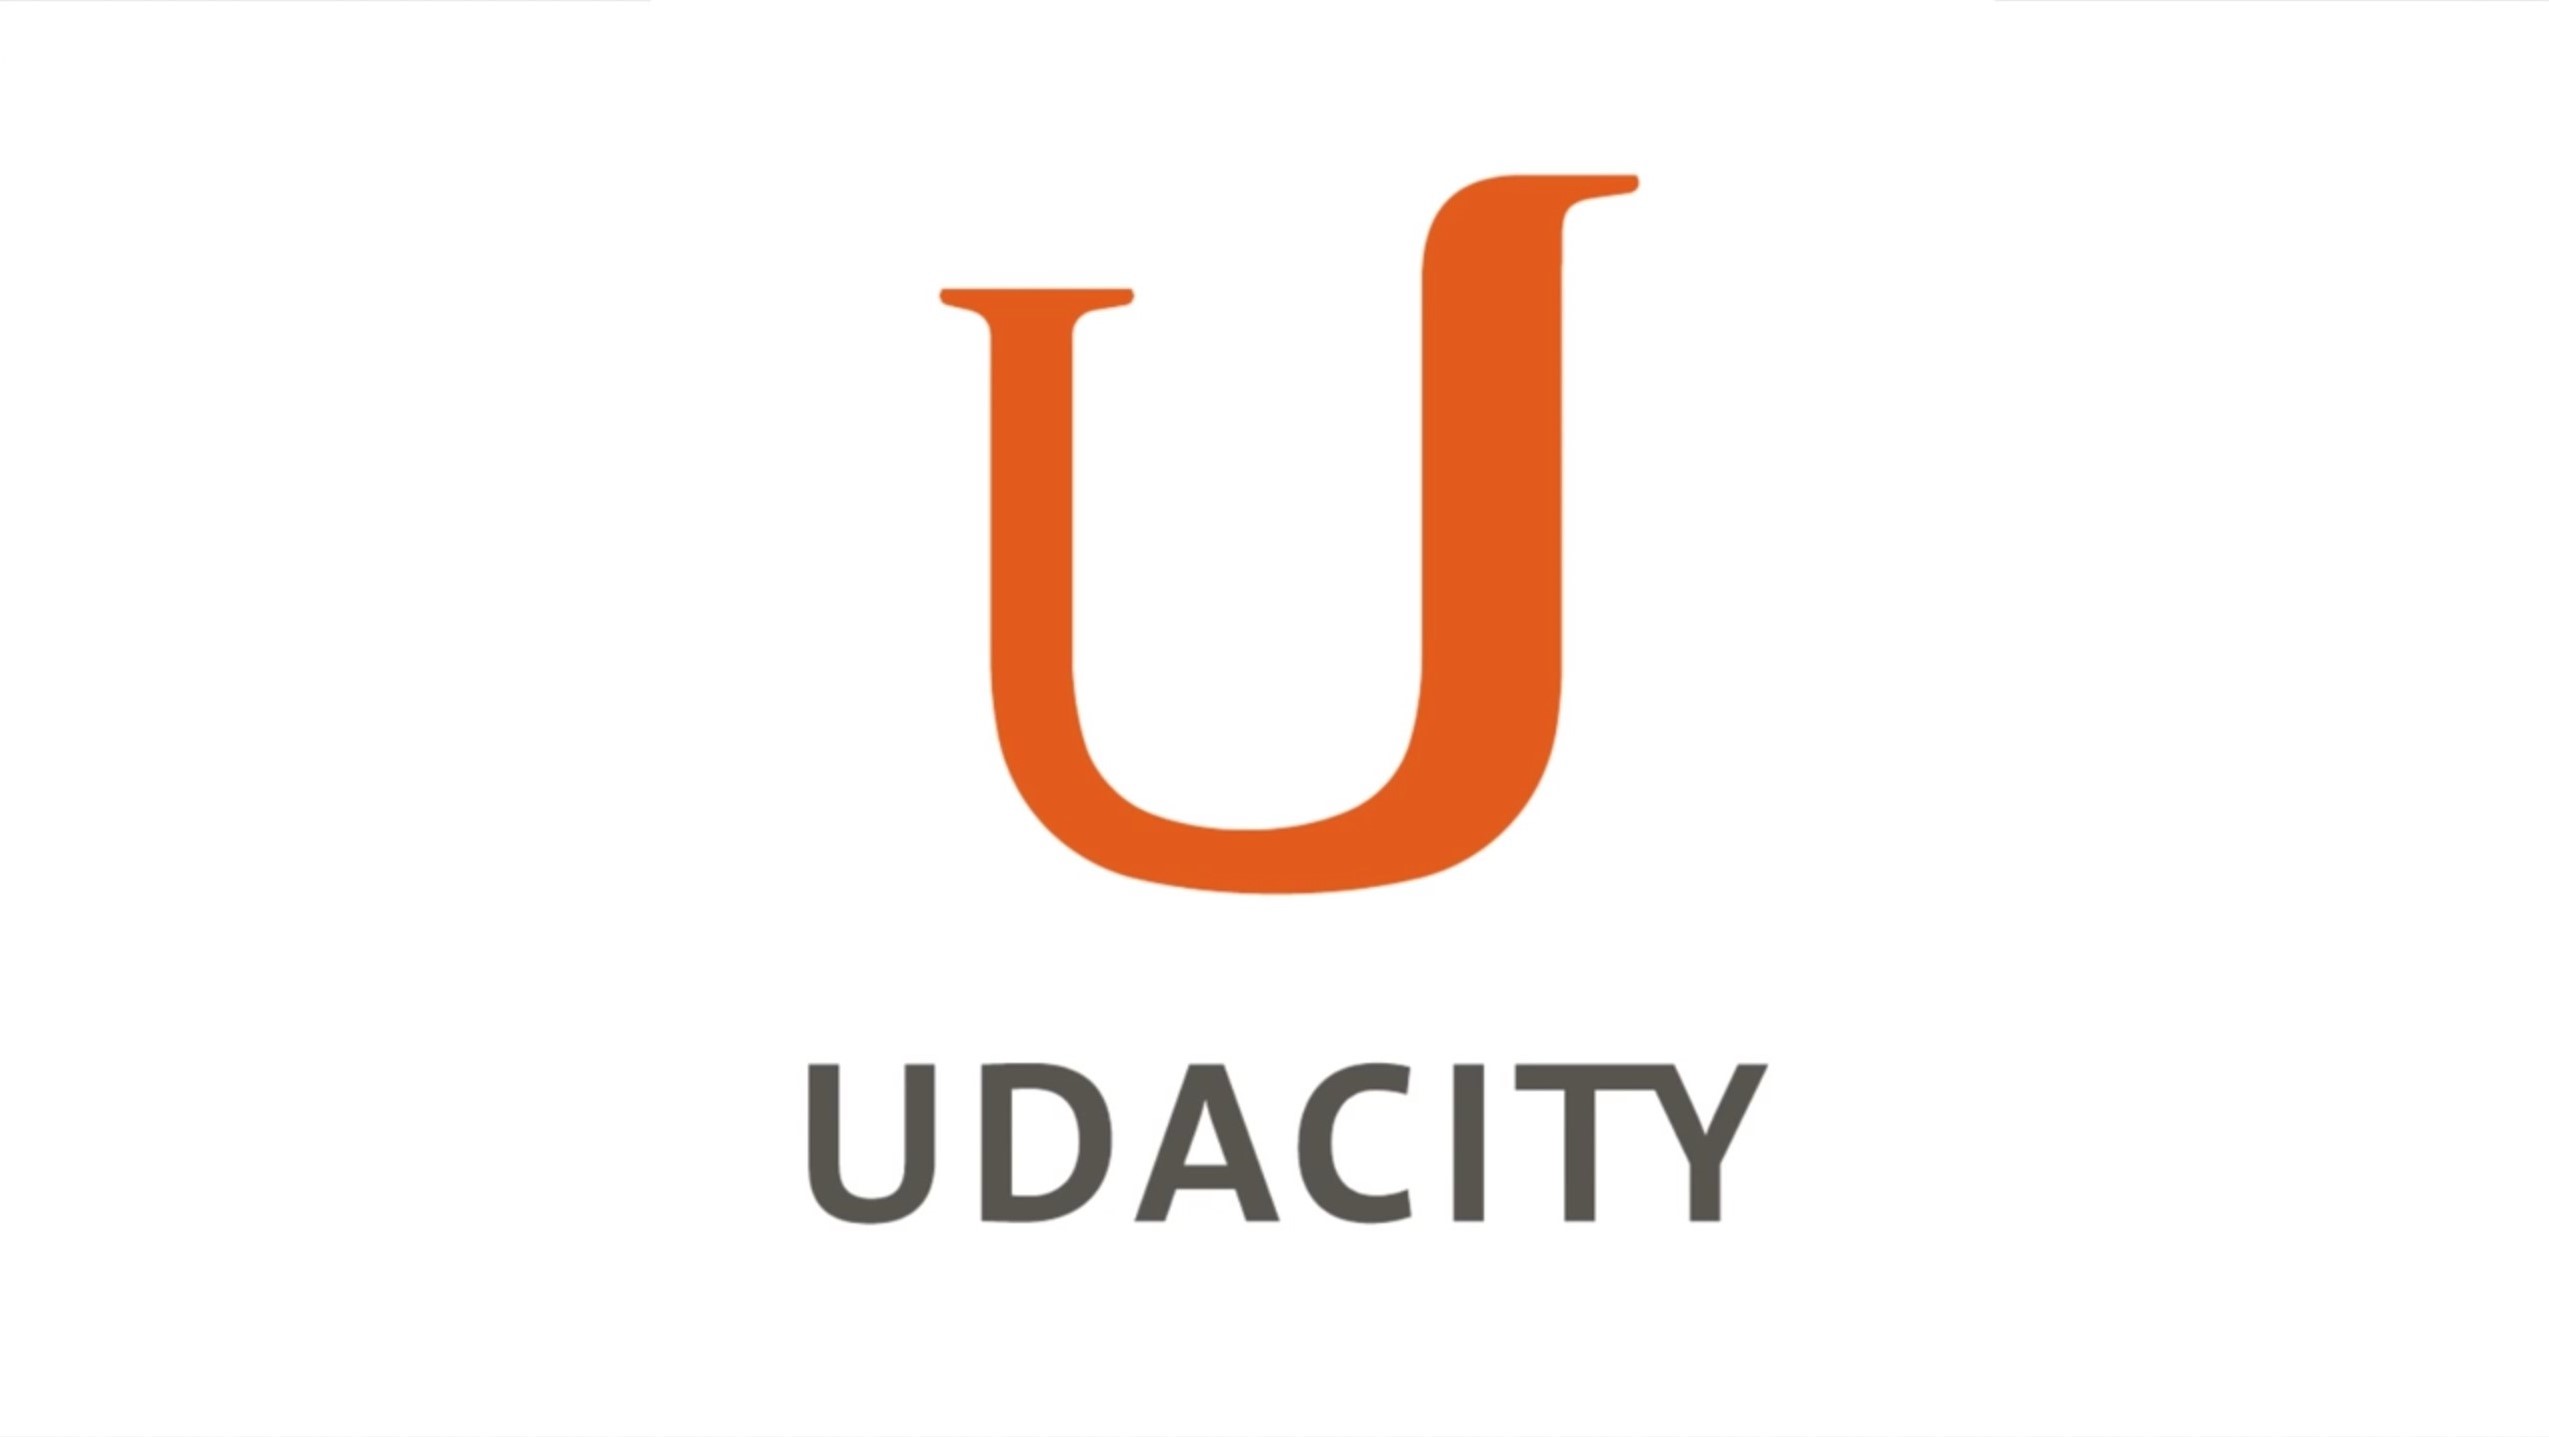 Udacity - Lifelong Learning